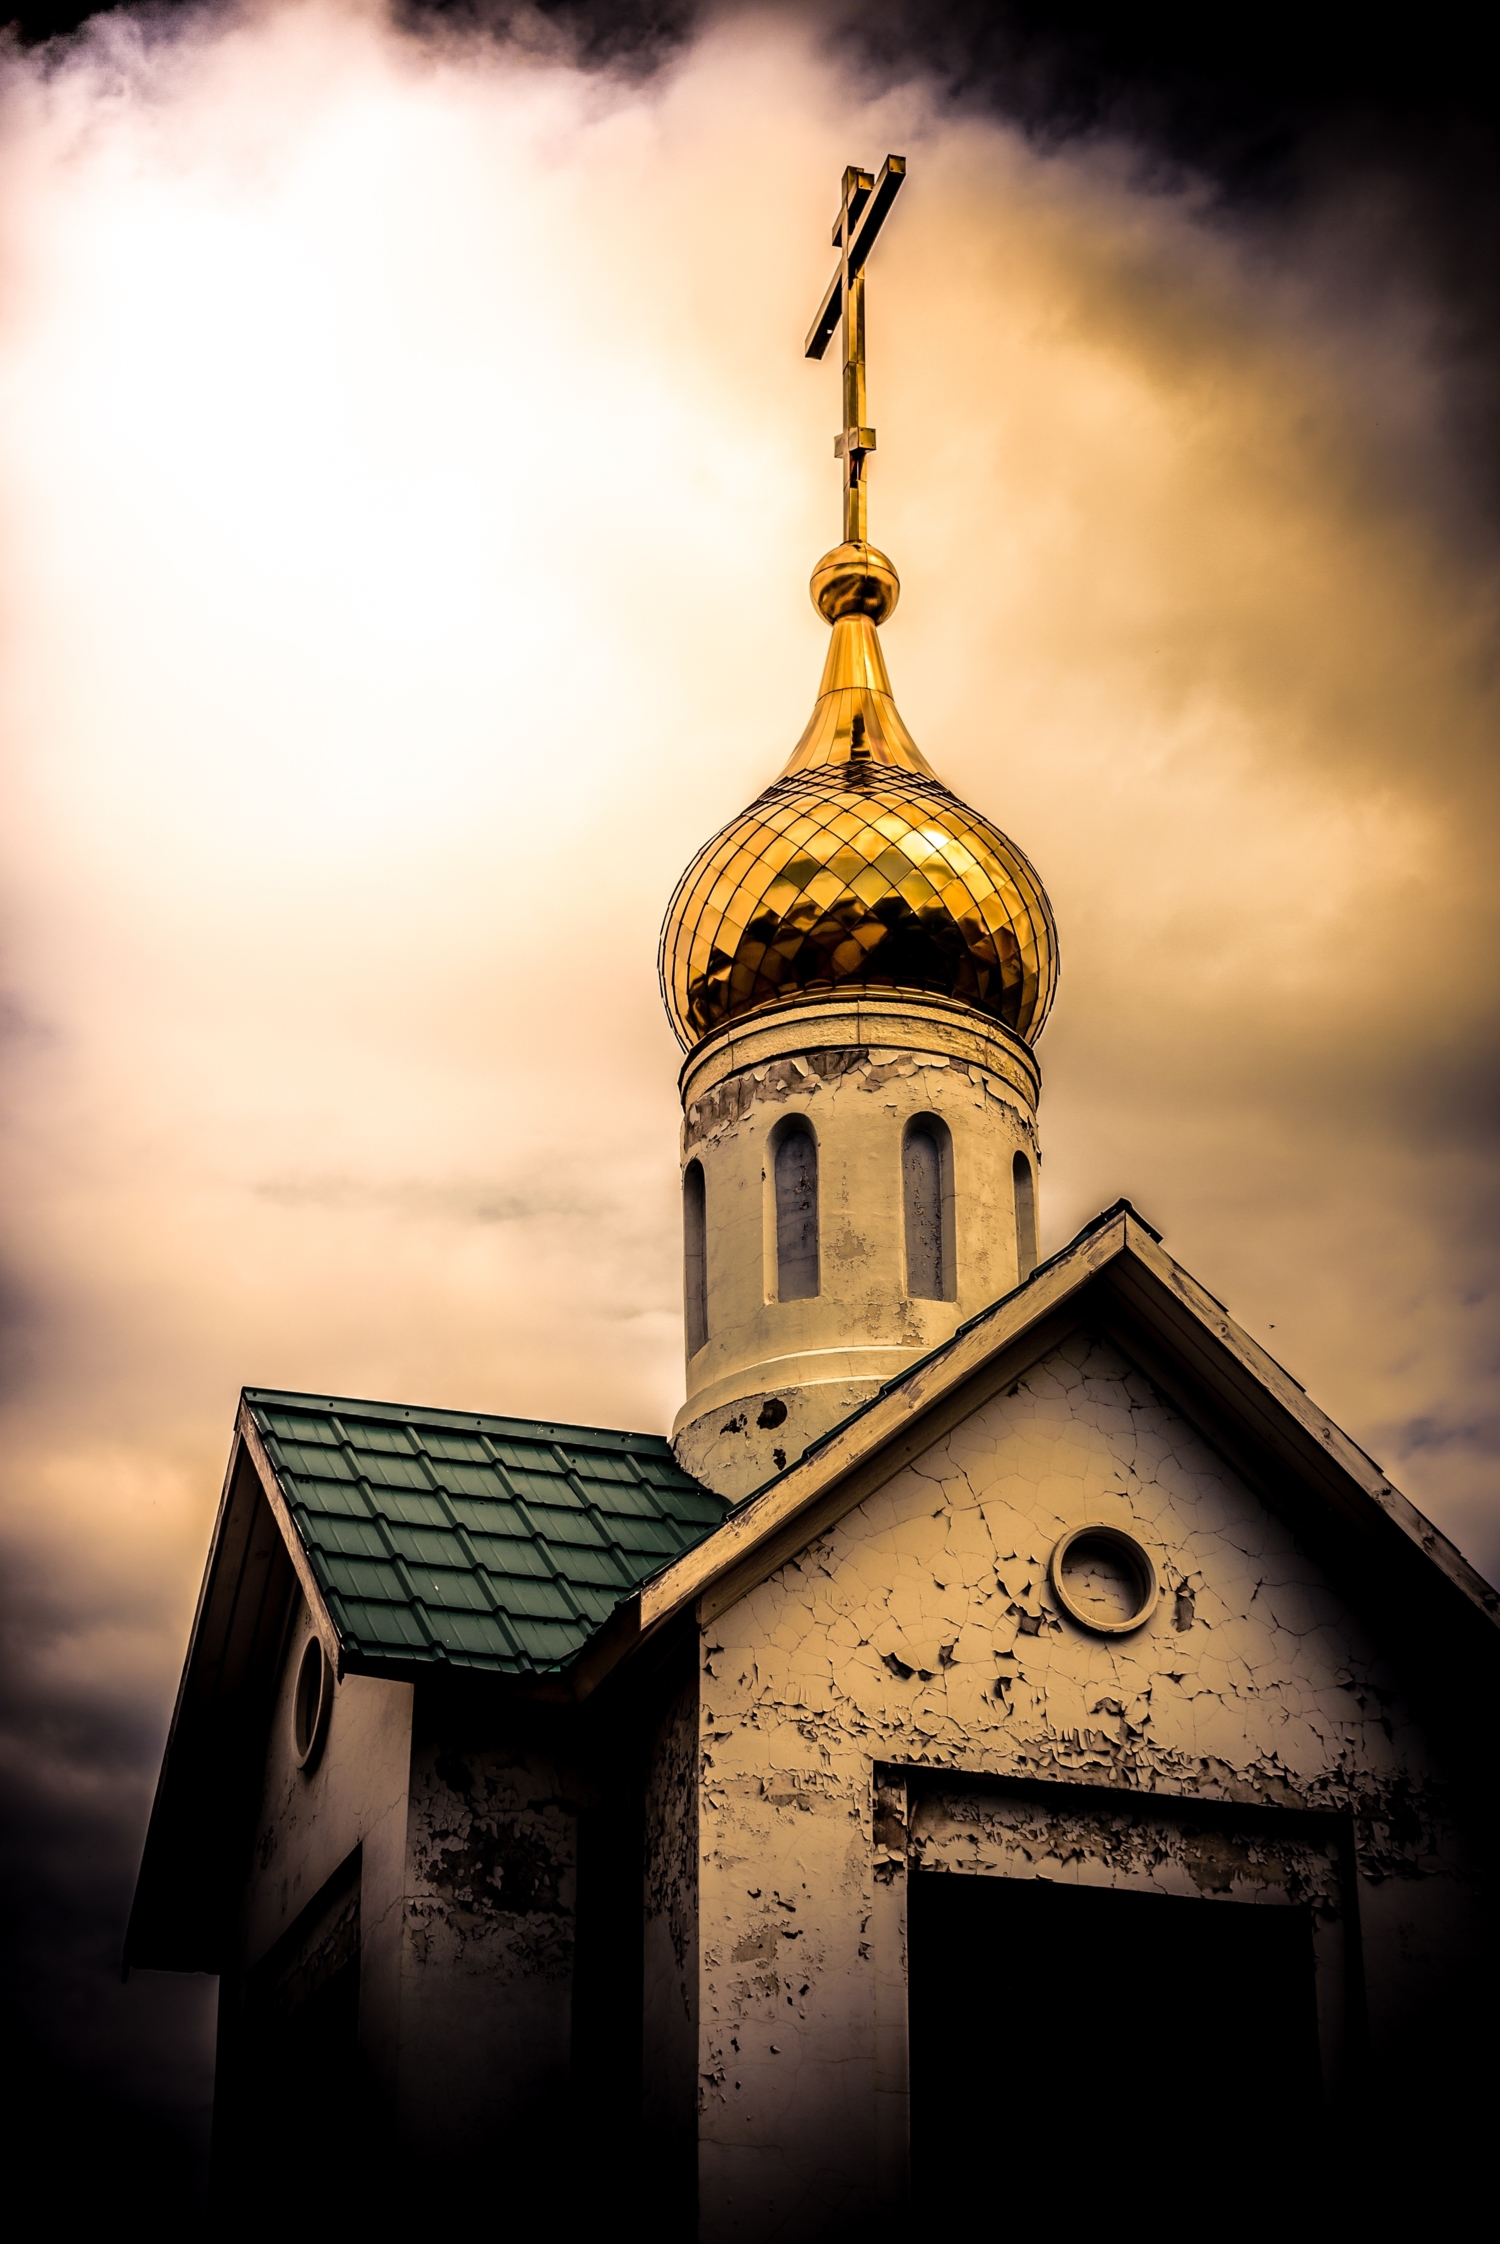 Омская церковь